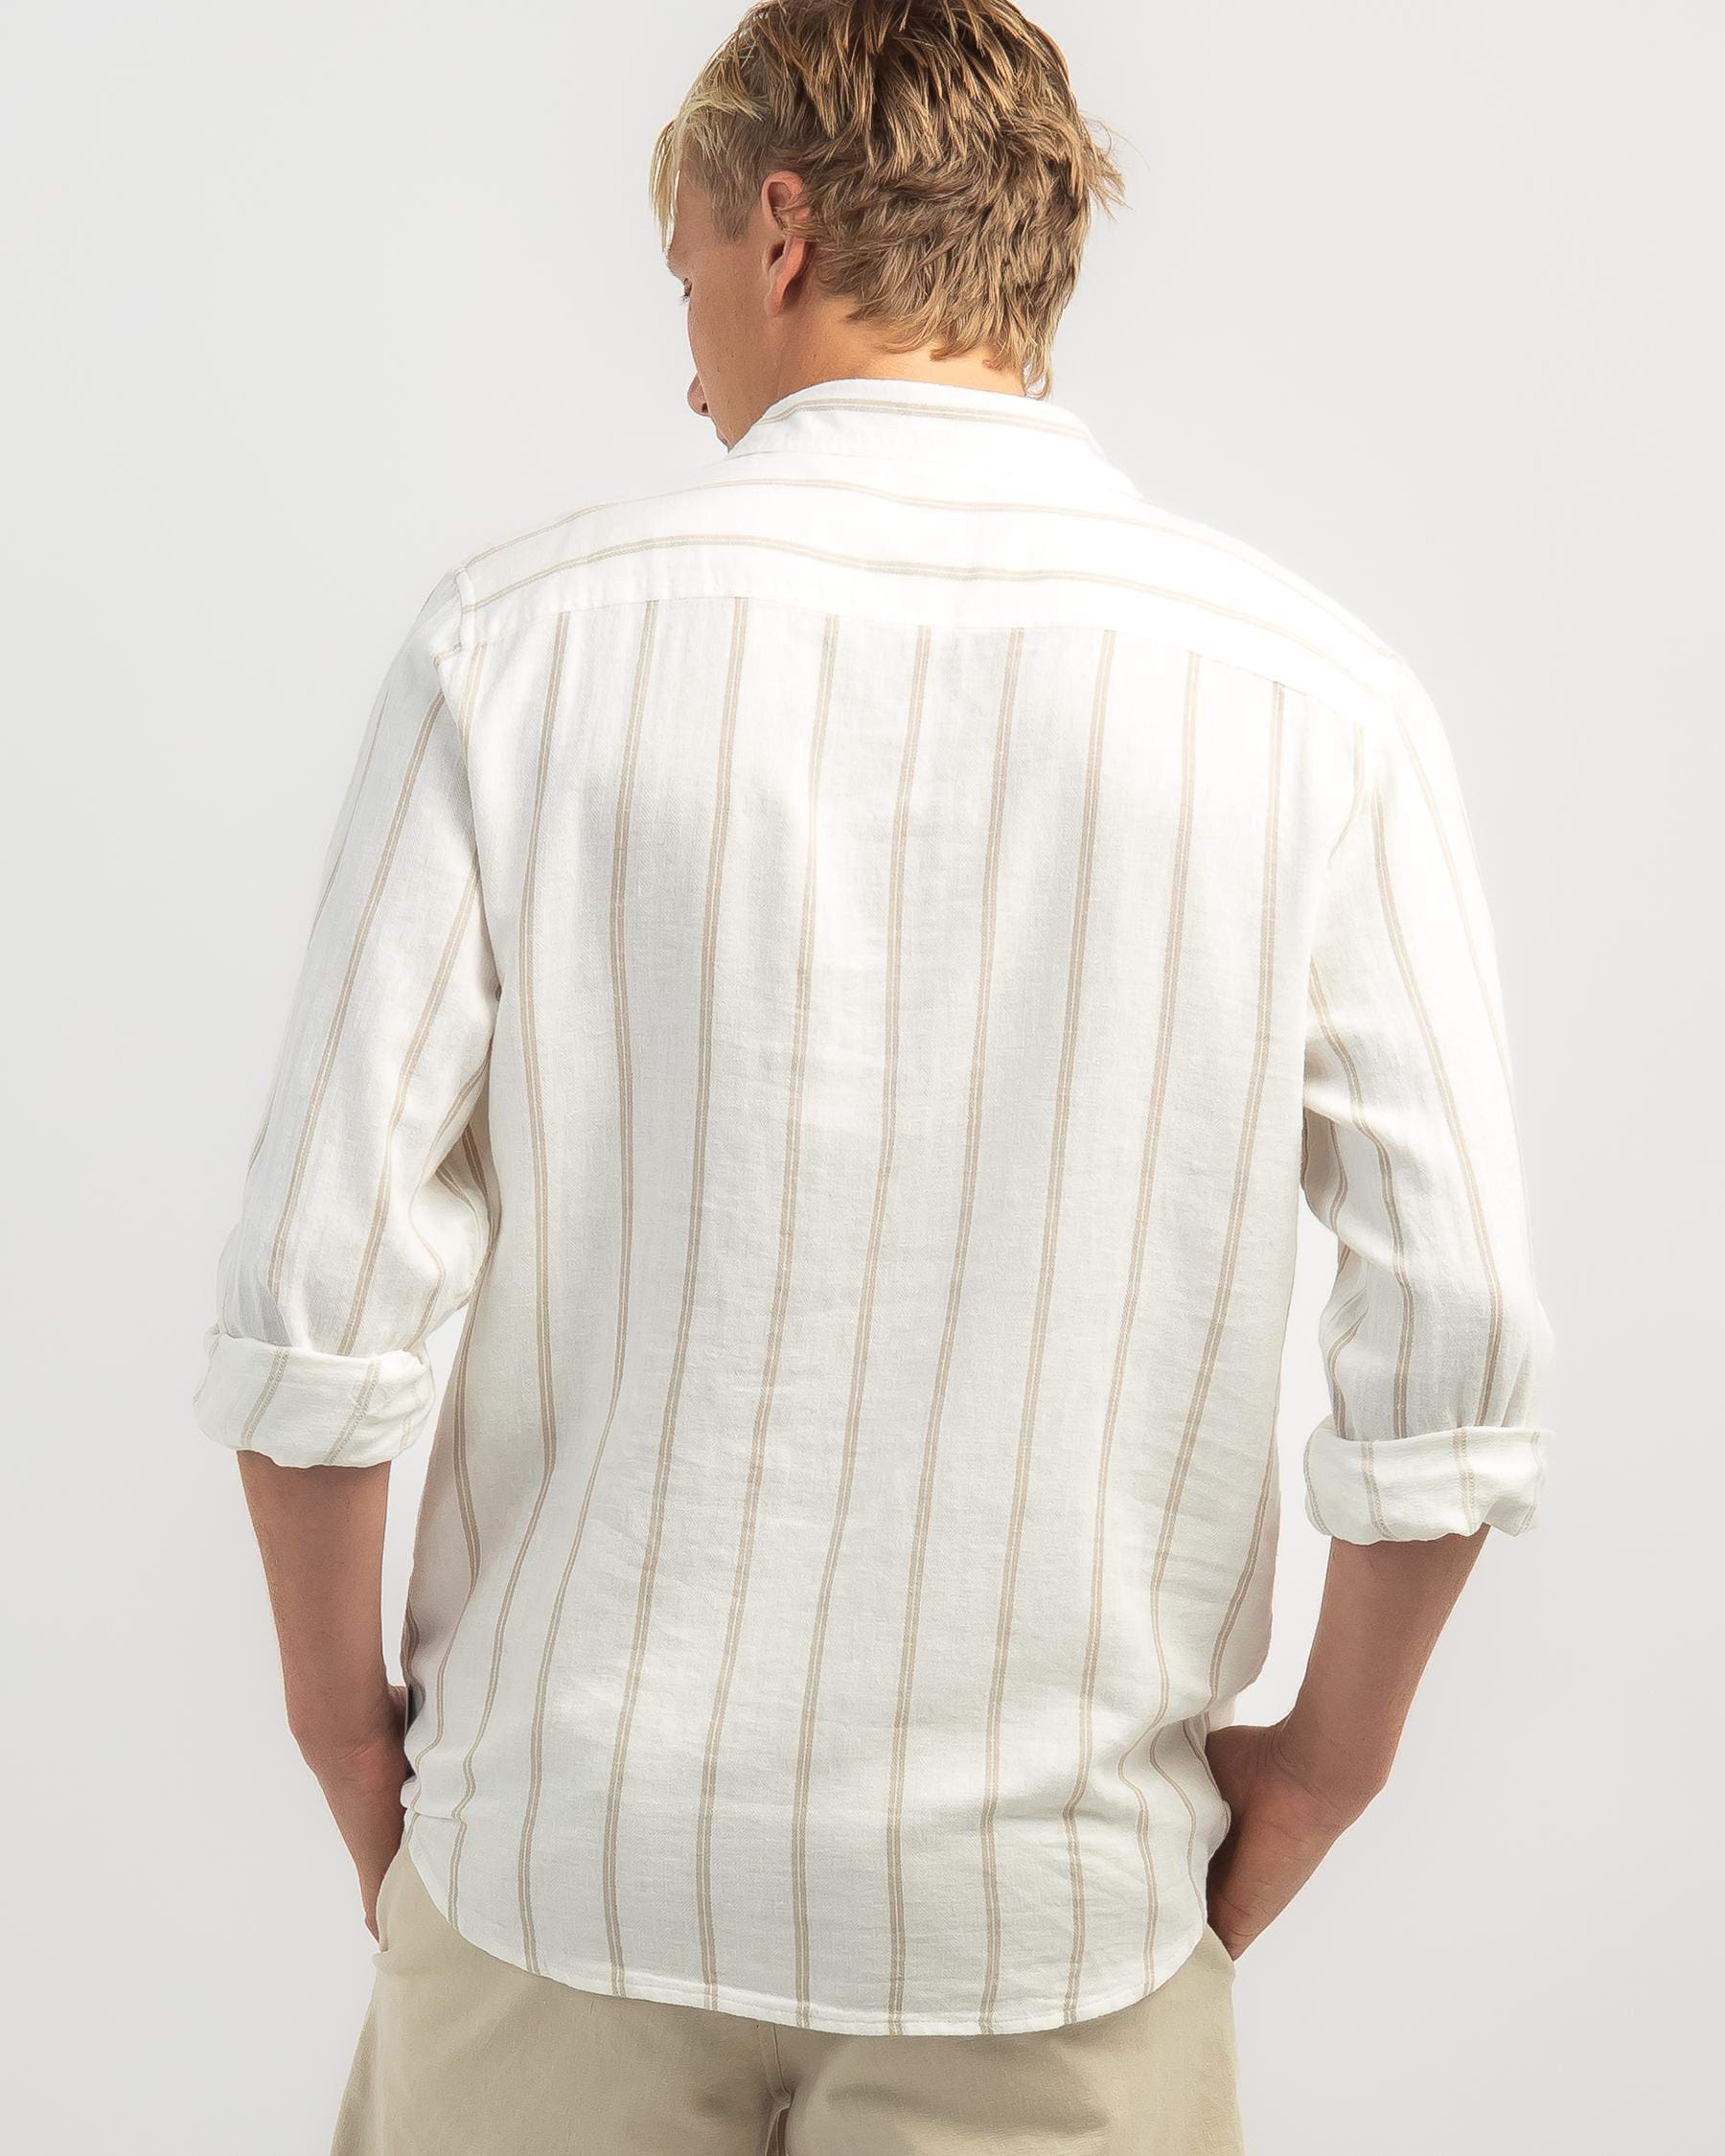 Skylark Trilogy Long Sleeve Shirt In White/tan - Fast Shipping & Easy ...